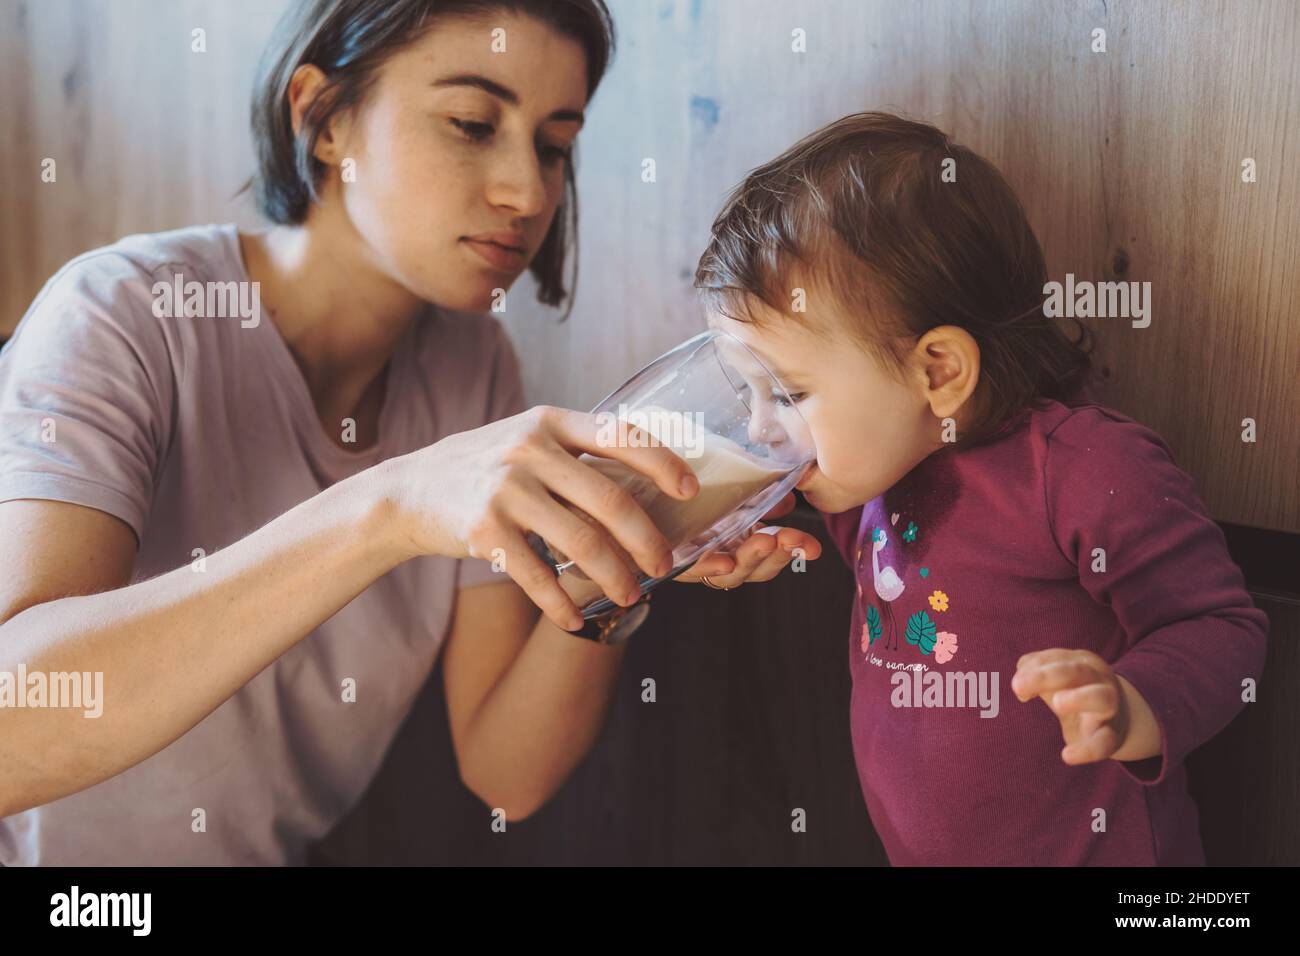 Madre dándole a la chica un vaso de leche para beber. Atención materna. Infancia. Foto de stock